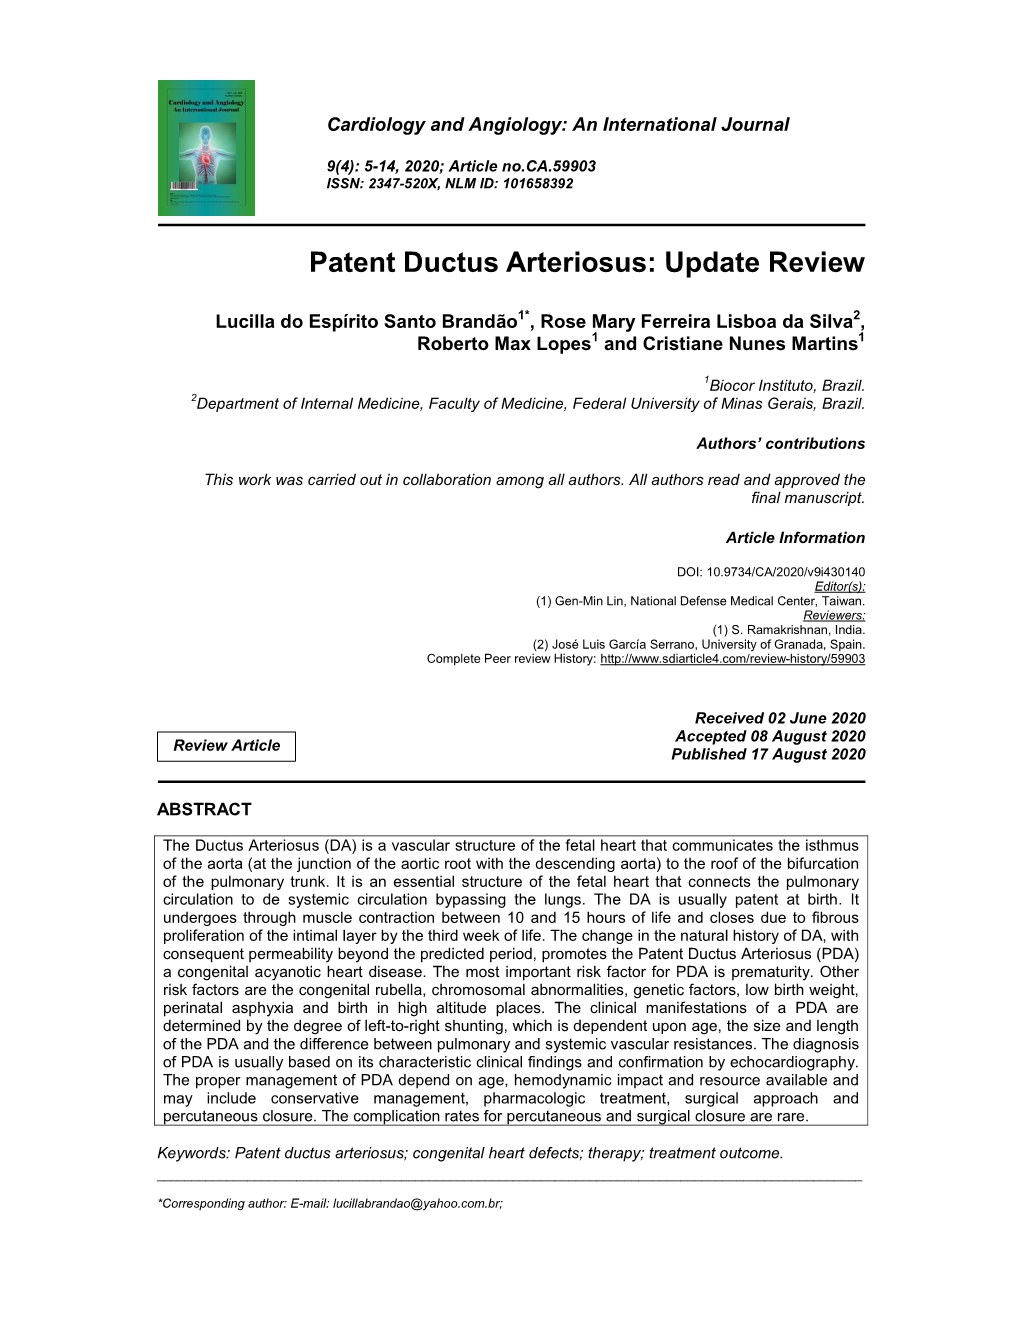 Patent Ductus Arteriosus: Update Review